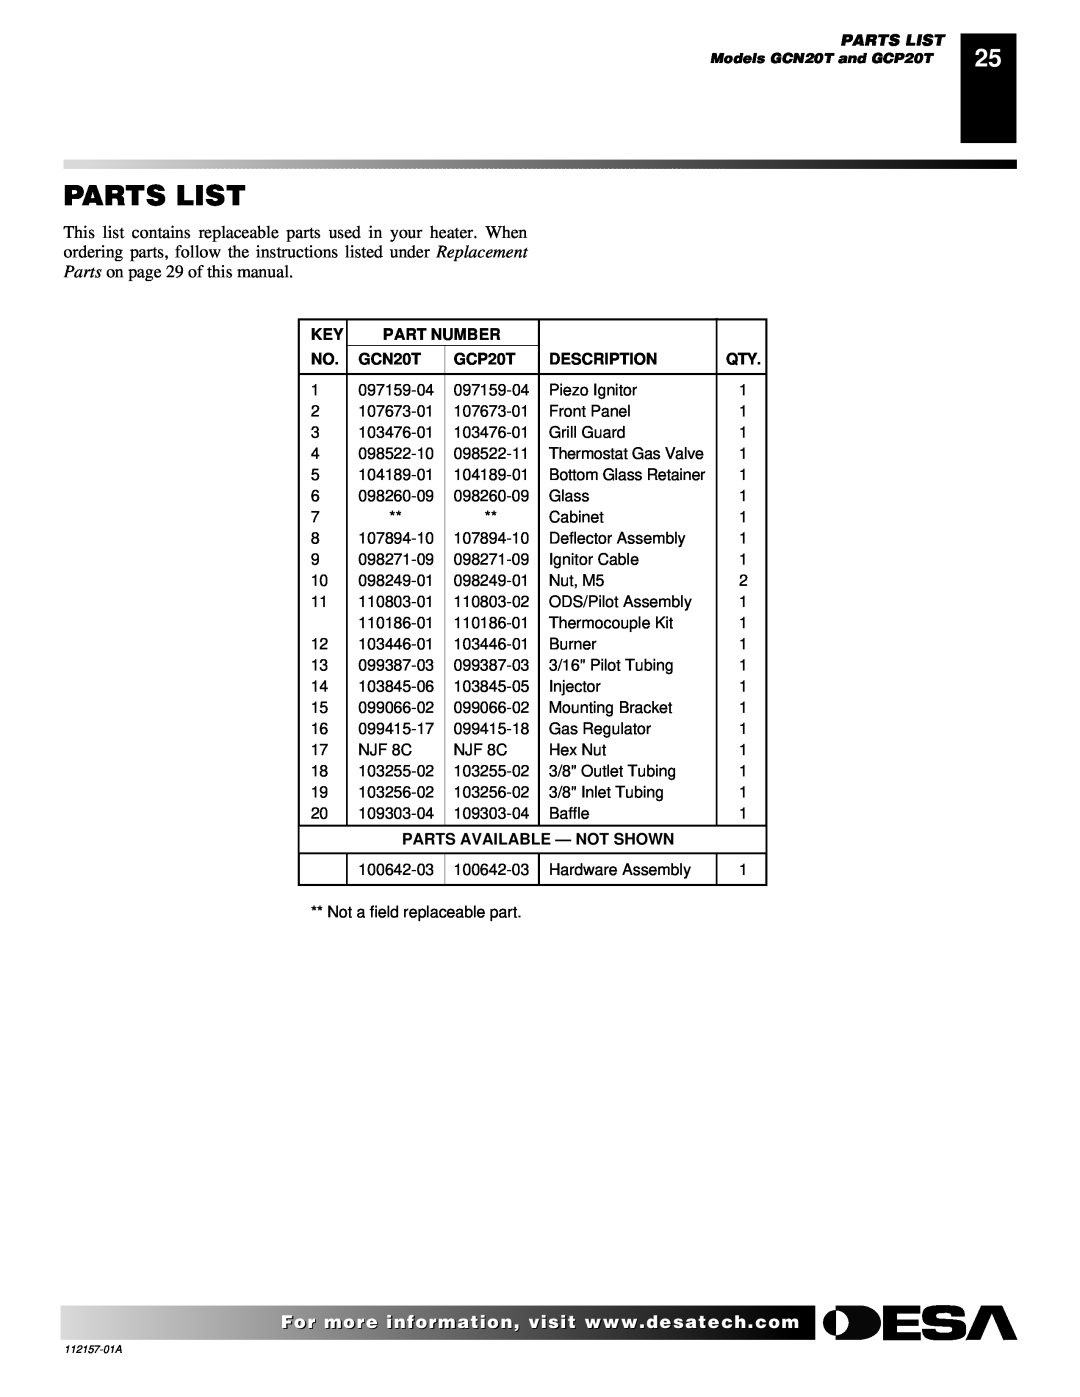 Desa GCP20T, GCP6 GCN10T, GCN6, GCP10TGCN20T Parts List, Part Number, Description, Parts Available - Not Shown 